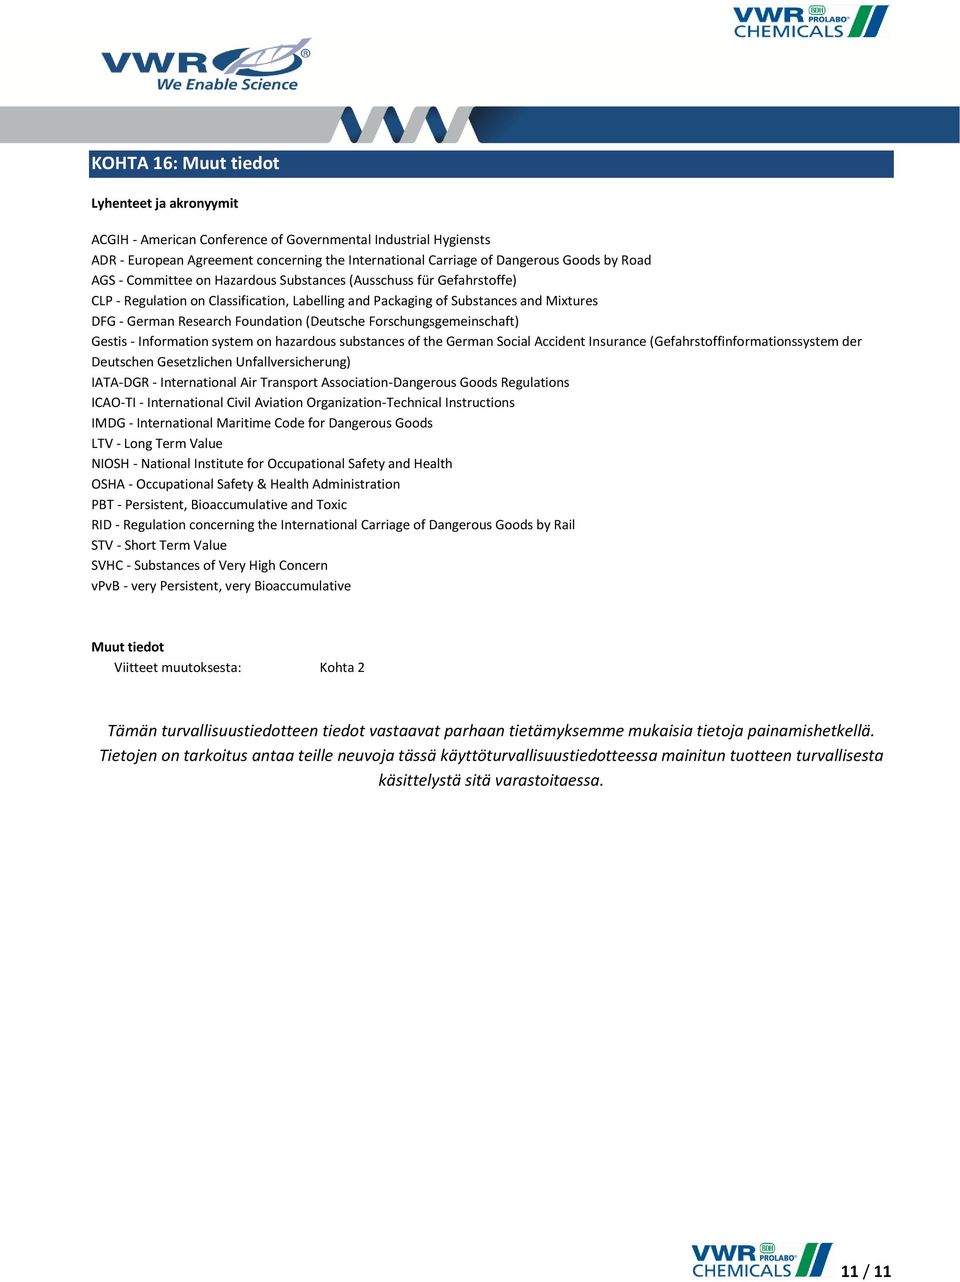 (Deutsche Forschungsgemeinschaft) Gestis - Information system on hazardous substances of the German Social Accident Insurance (Gefahrstoffinformationssystem der Deutschen Gesetzlichen